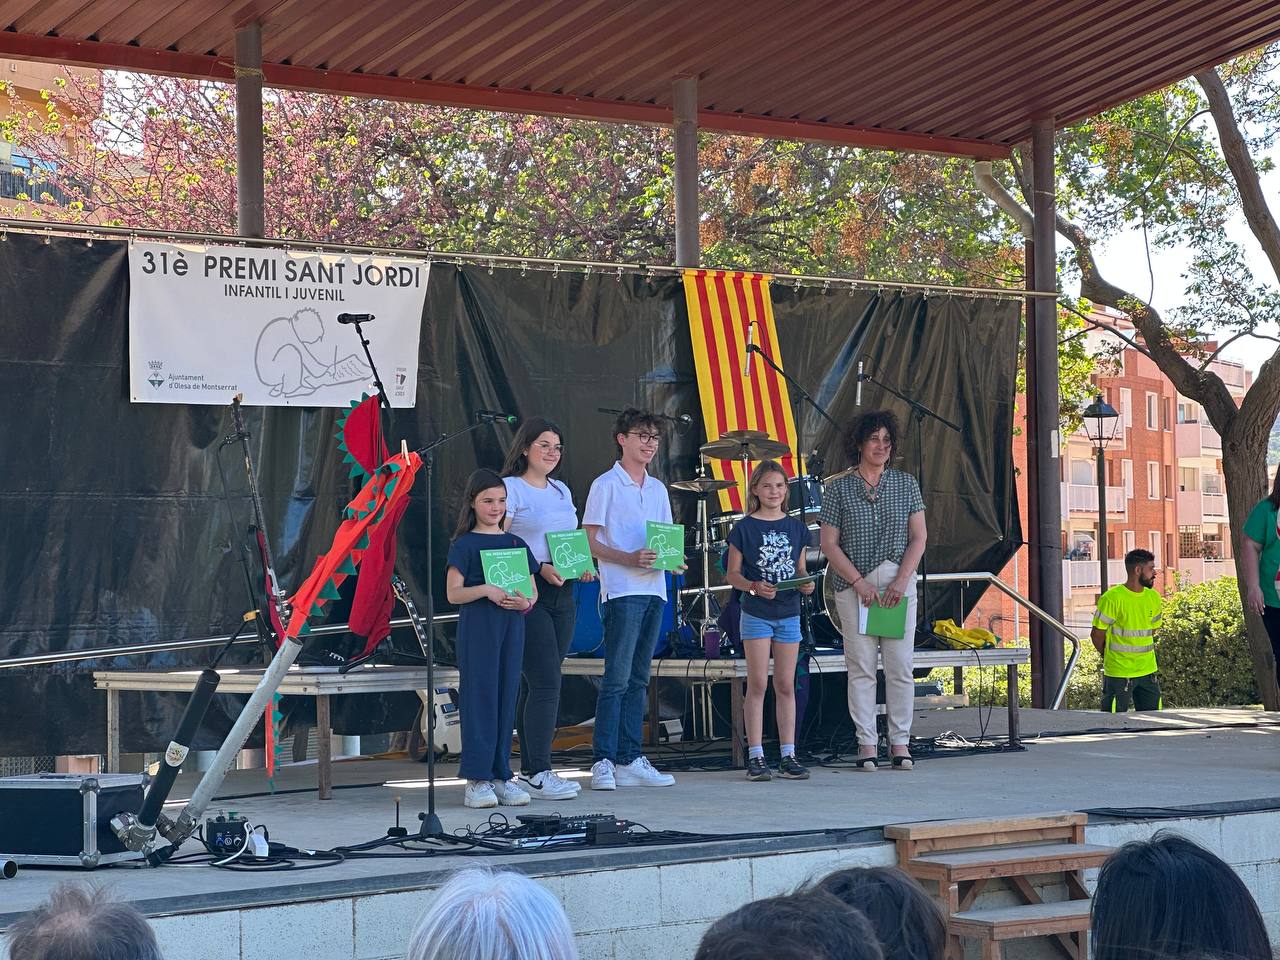 31è Premi Sant Jordi infantil i juvenil. Guanyadors/es 2022.